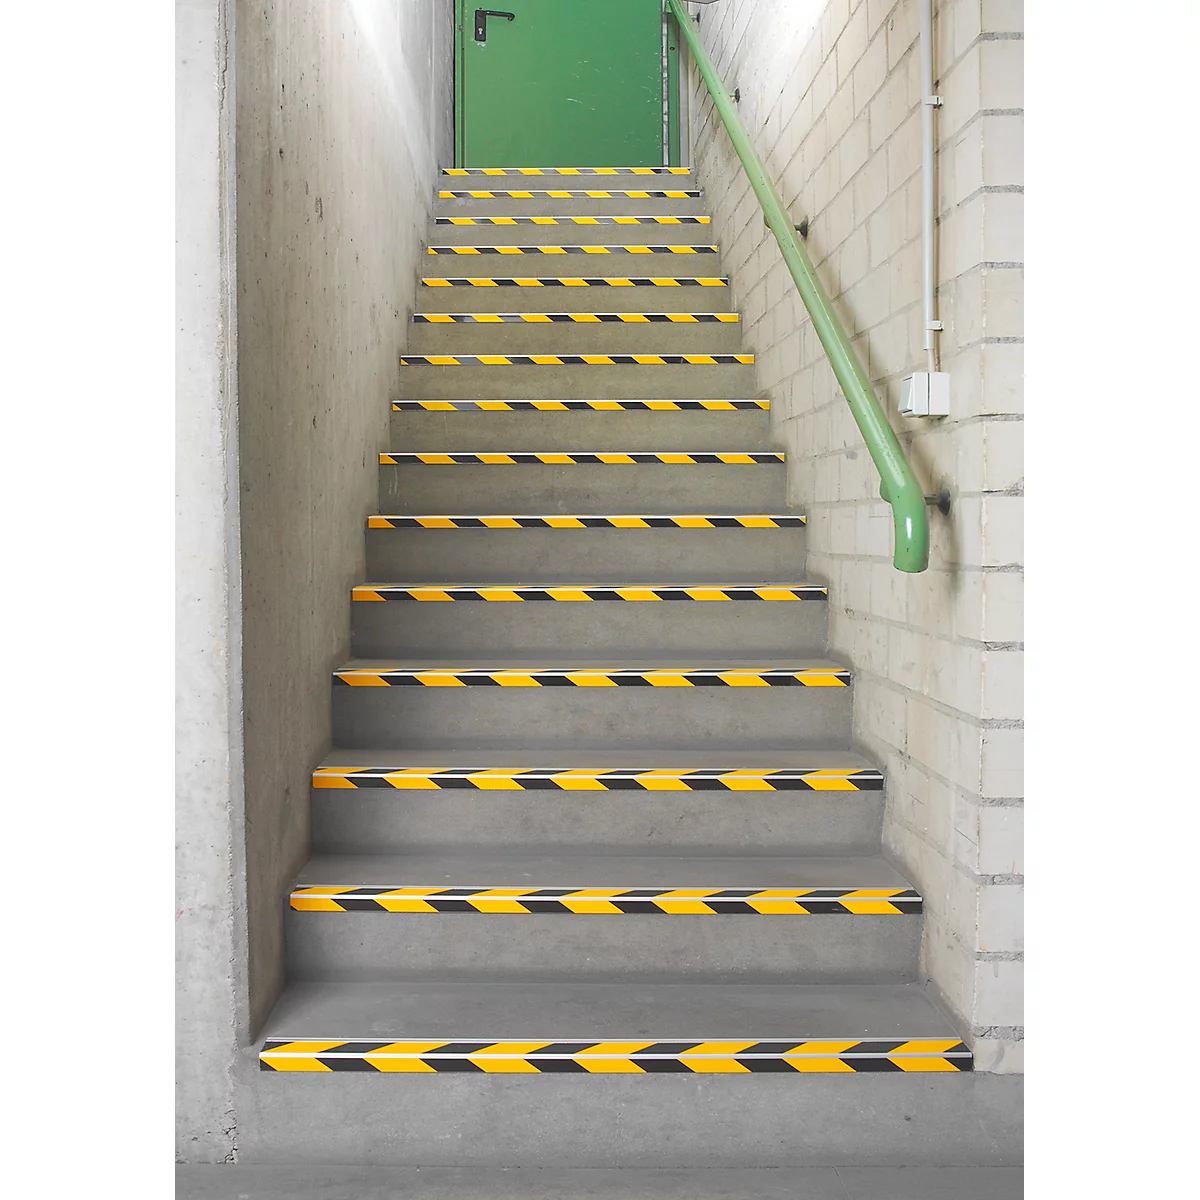 Stufenprofile CleanGrip, Schraubvariante, zur Markierung von Treppenstufen nach DIN 18040, L 1000 x B 60 x H 30 mm, schwarz/gelb